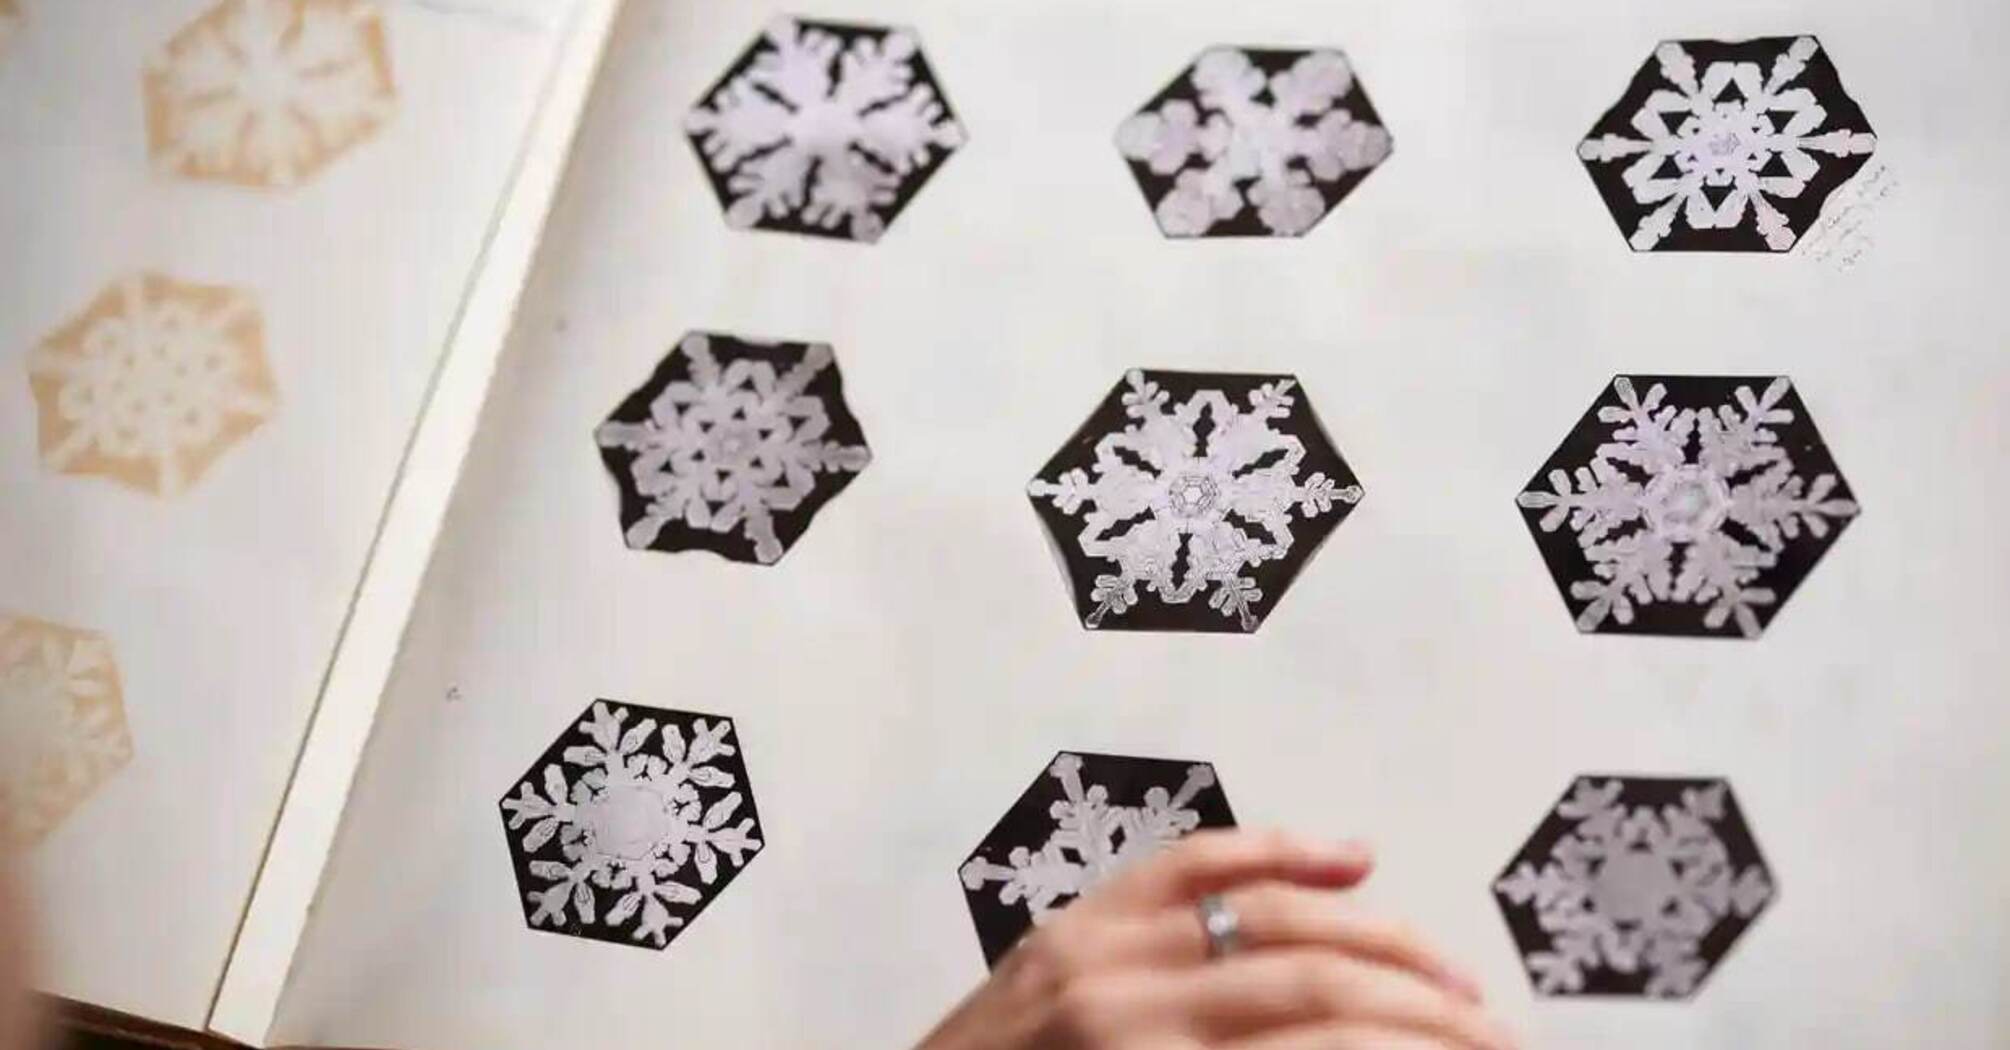 Альбом з зображенням сніжинок вченого Вілсона Бентлі оцифрували та виклали в мережу